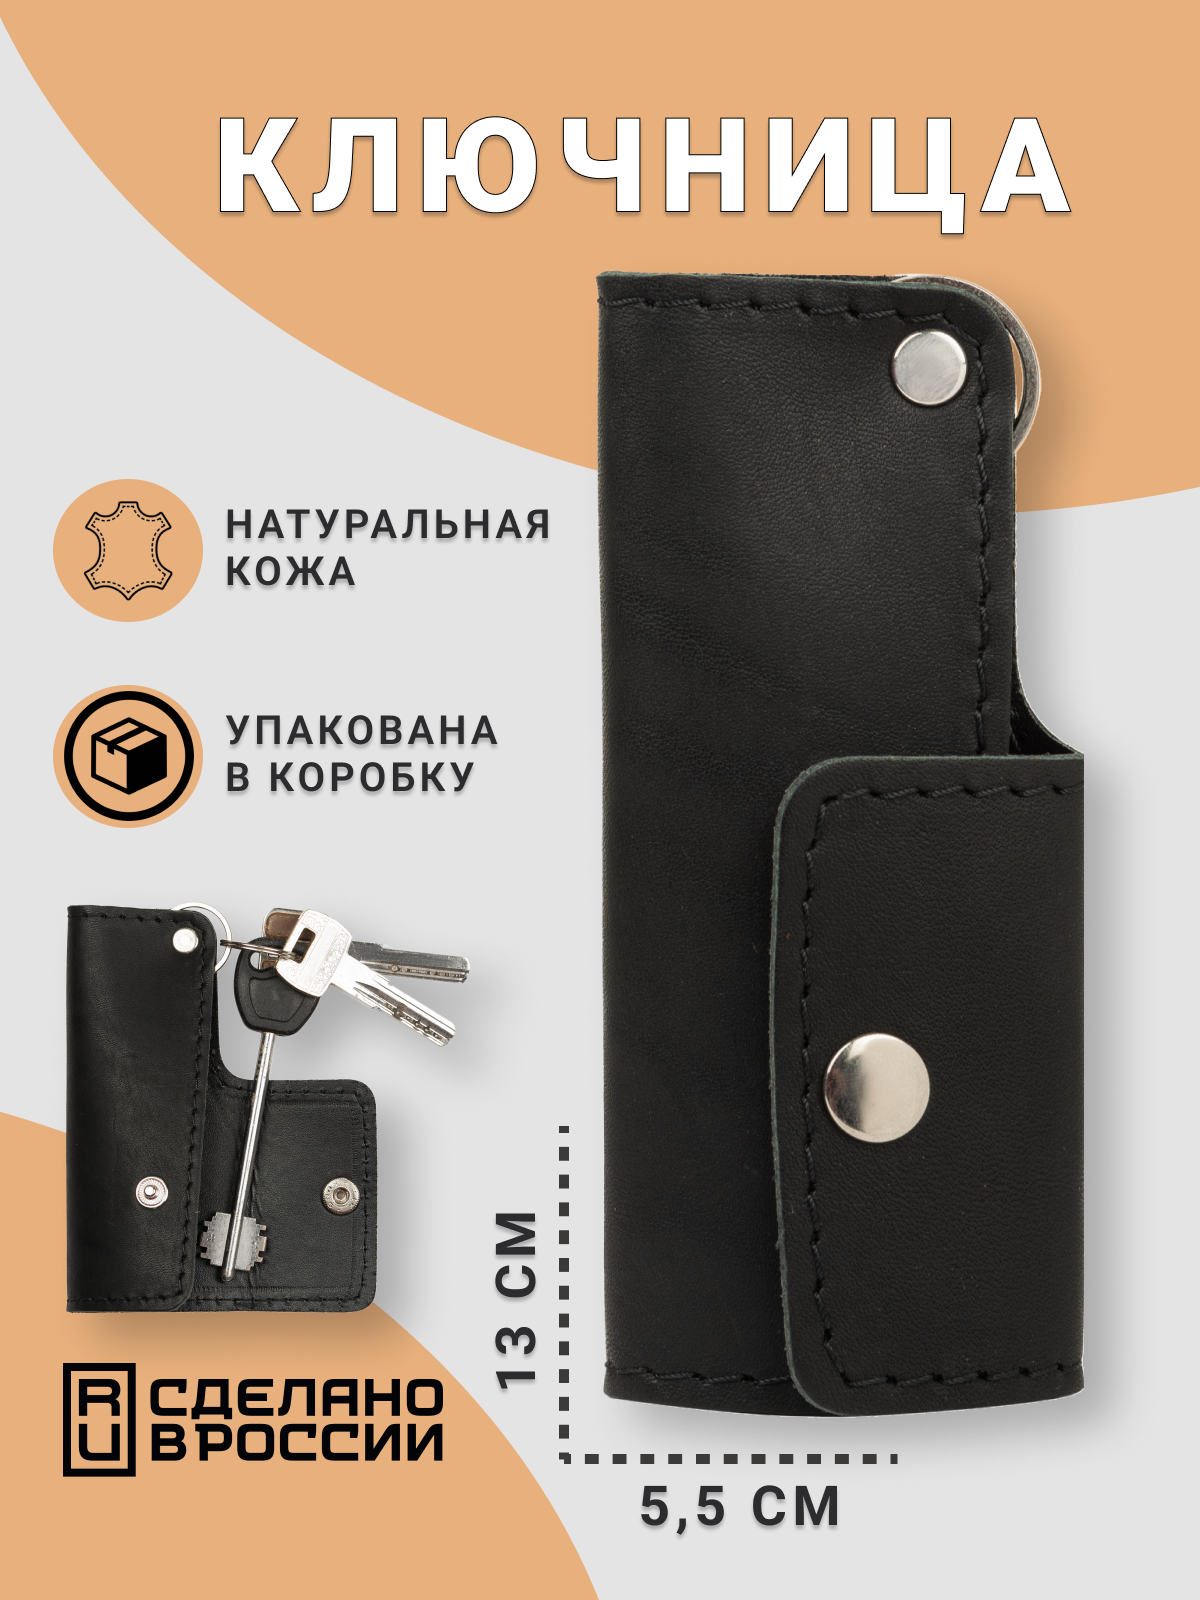 Ключница кожZавод Кожаная ключница — удобный карманный чехол для хранения ключей